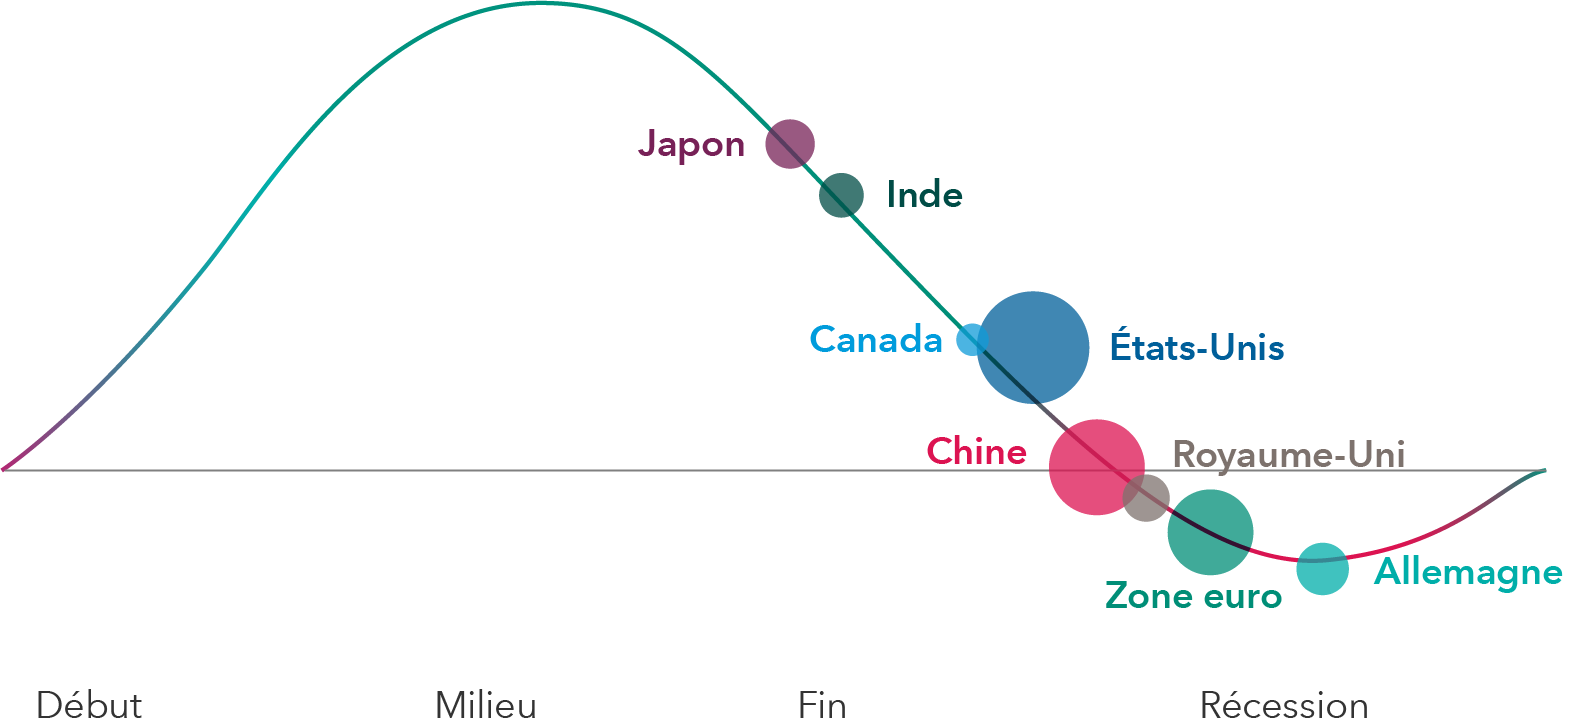 L’image présente un graphique linéaire avec les catégories de cycle économique standard (début, milieu, fin et récession) pour huit grands pays ou régions. Le Japon, l’Inde, le Canada et les États-Unis se situent dans la catégorie des pays en milieu ou en fin de cycle, la Chine est à la limite de la fin du cycle et de la récession, et le Royaume-Uni, la zone euro et l’Allemagne sont en récession.